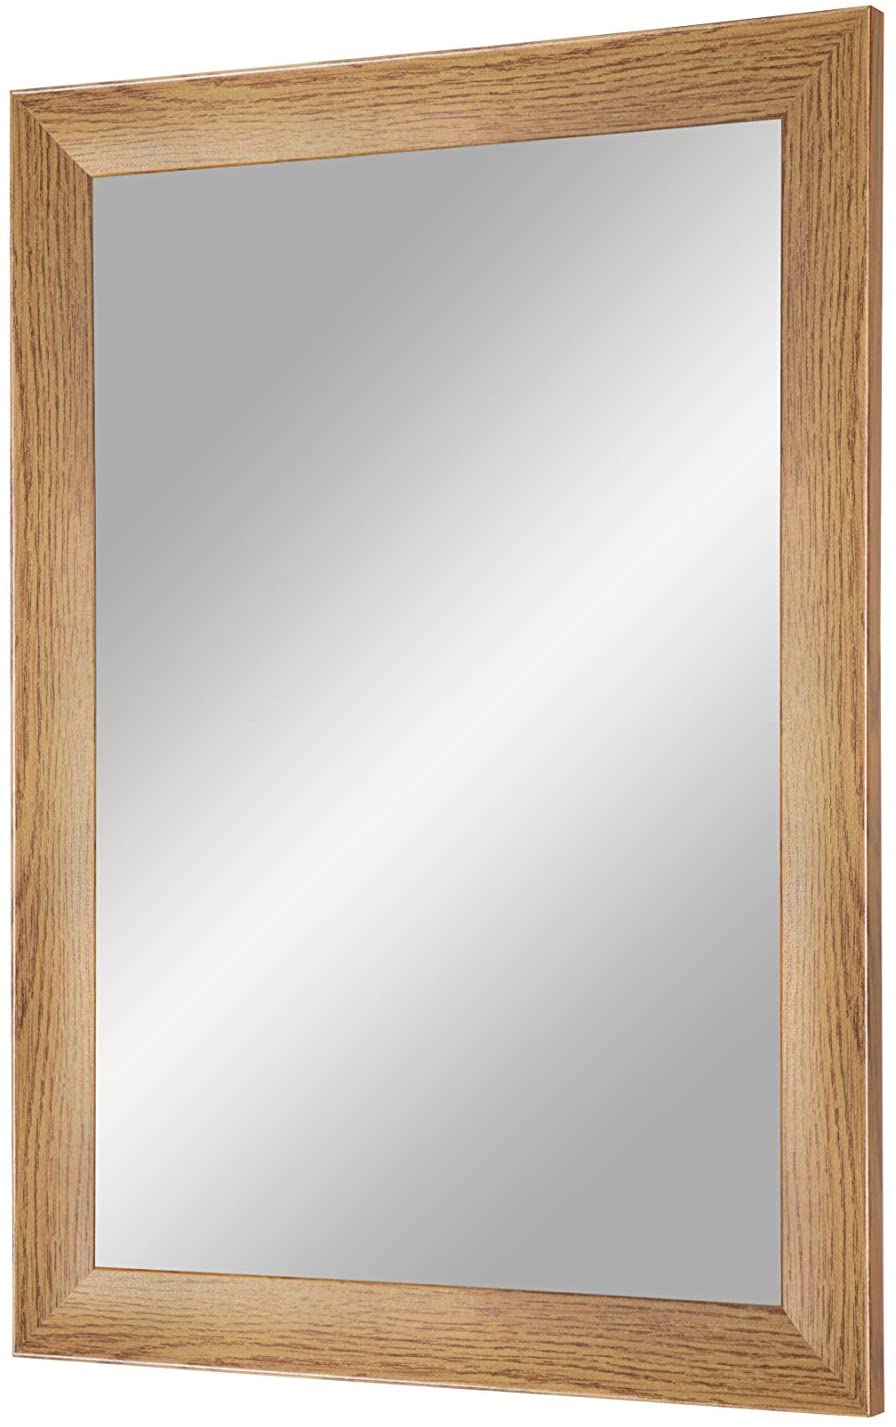 EXCLUSIV Wandspiegel nach Maß (Eiche-Rustikal), Maßgefertigter Spiegelrahmen inkl. Spiegel und stabiler Rückwand mit Aufhängern